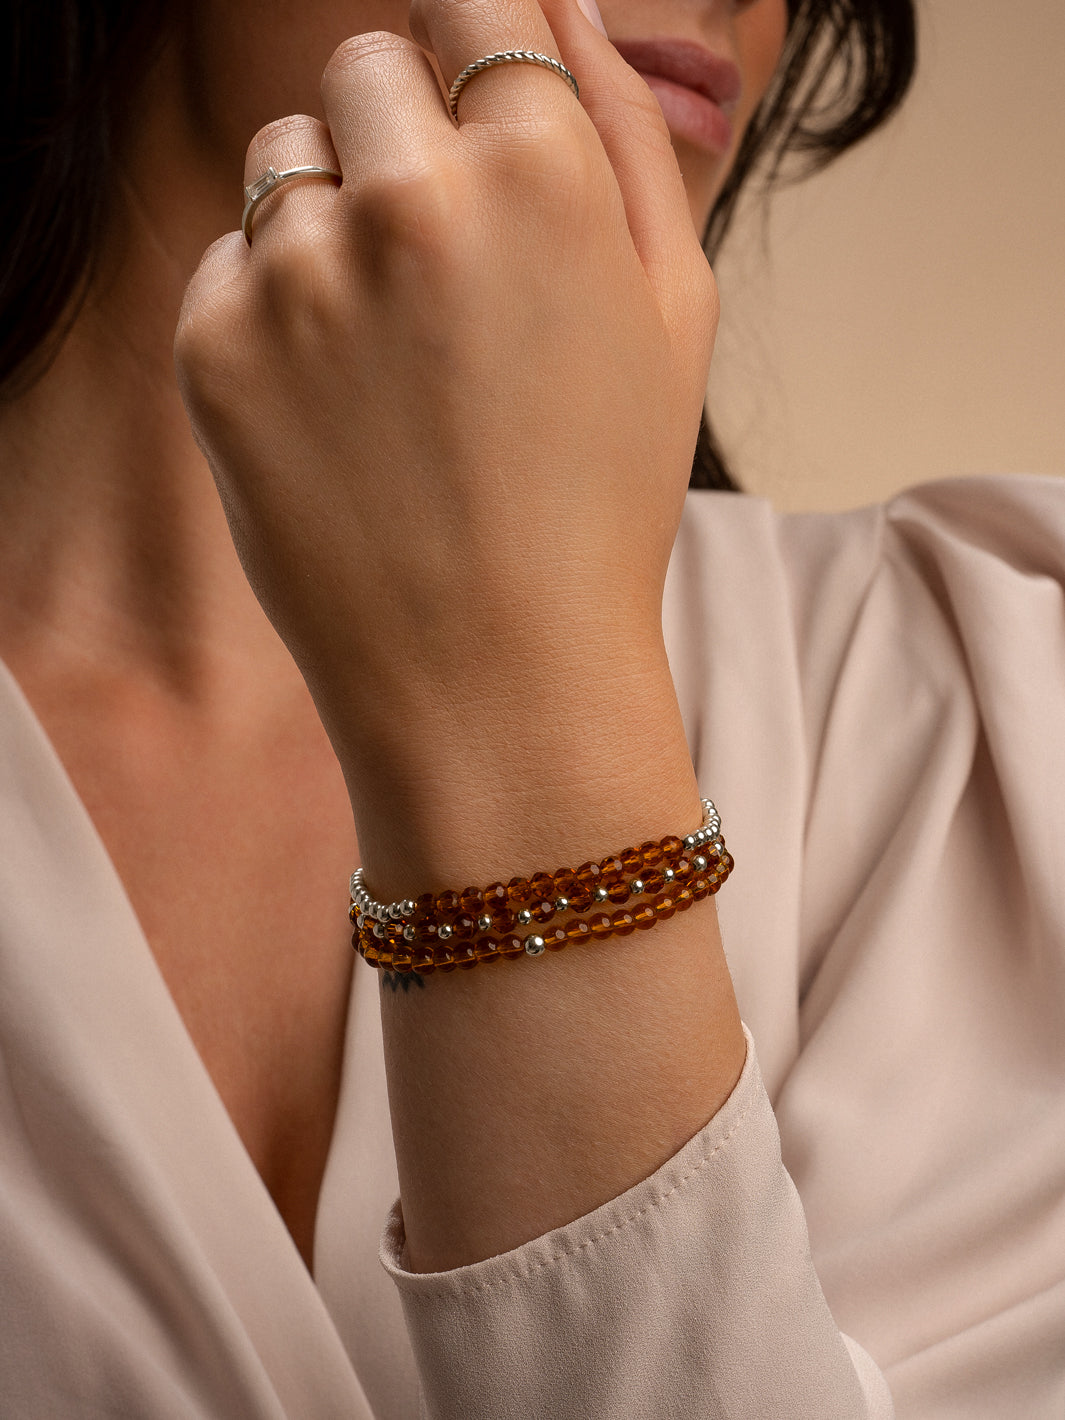 Model met om de pols 3 armbanden van Sparkling Jewels in Citrine Quartz met zilver. Line, mix en 4mm. #kleur_zilver